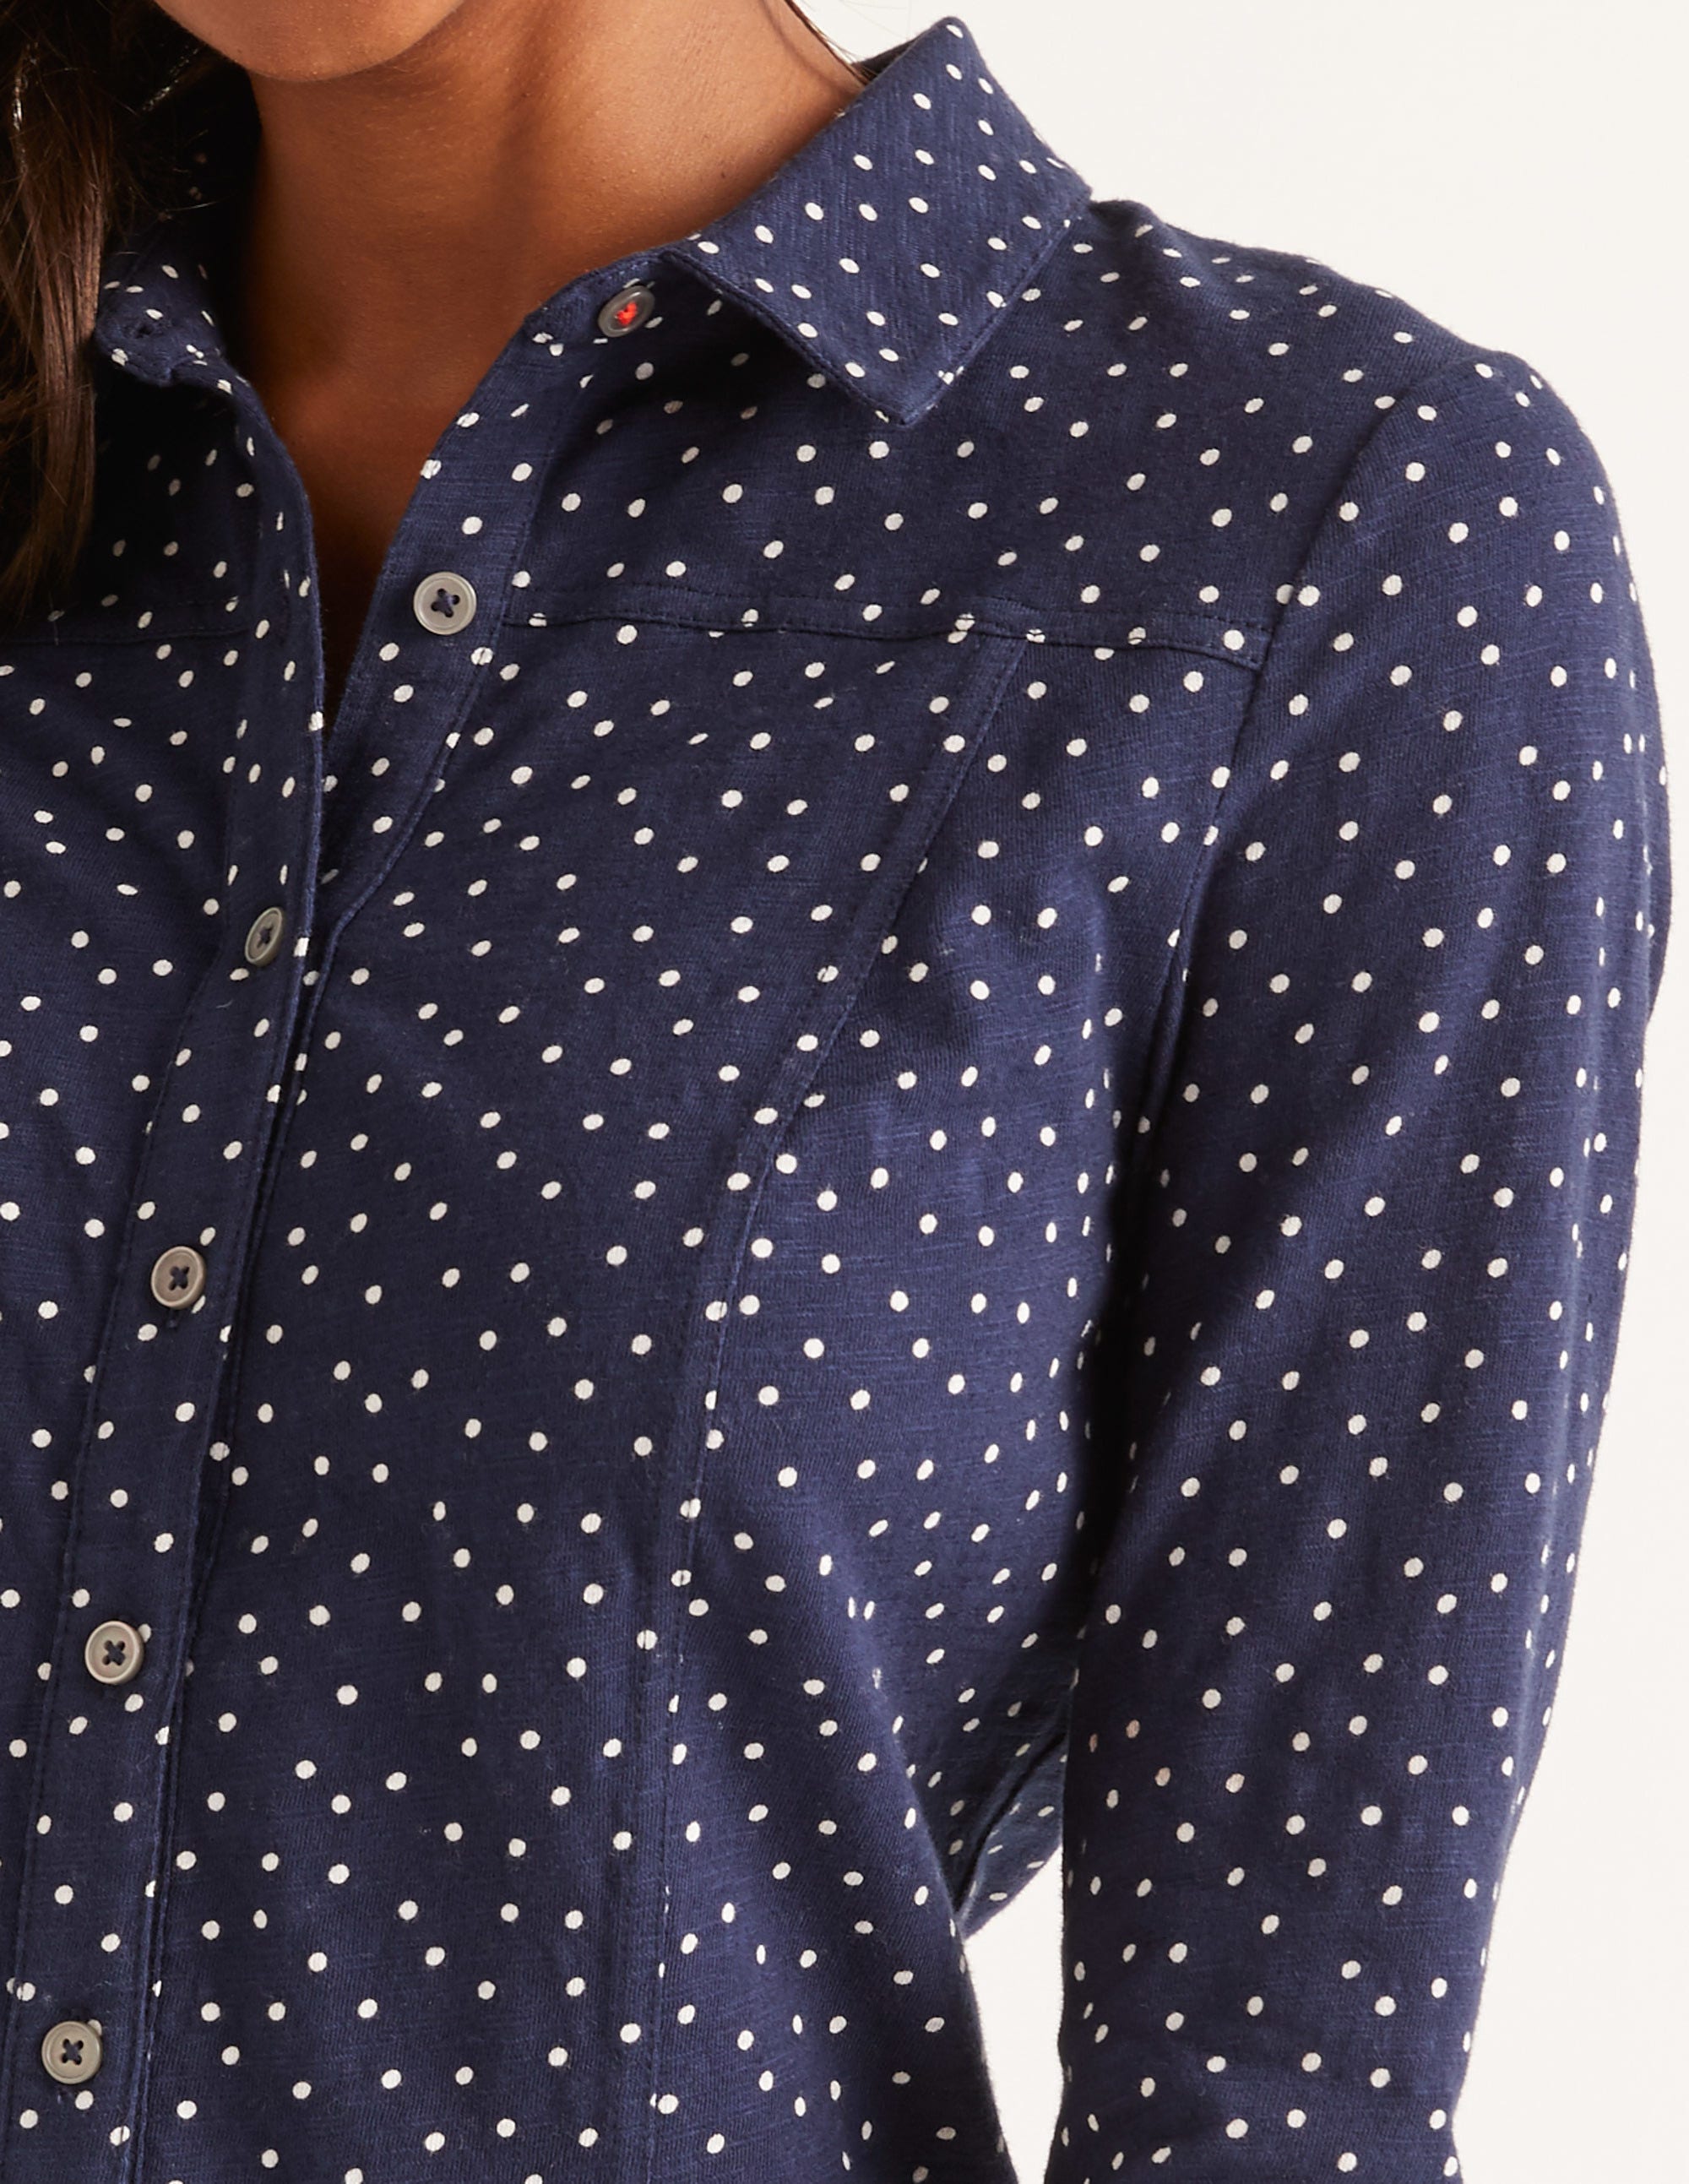 Tara Jersey Shirt - Navy, Polka Dot 